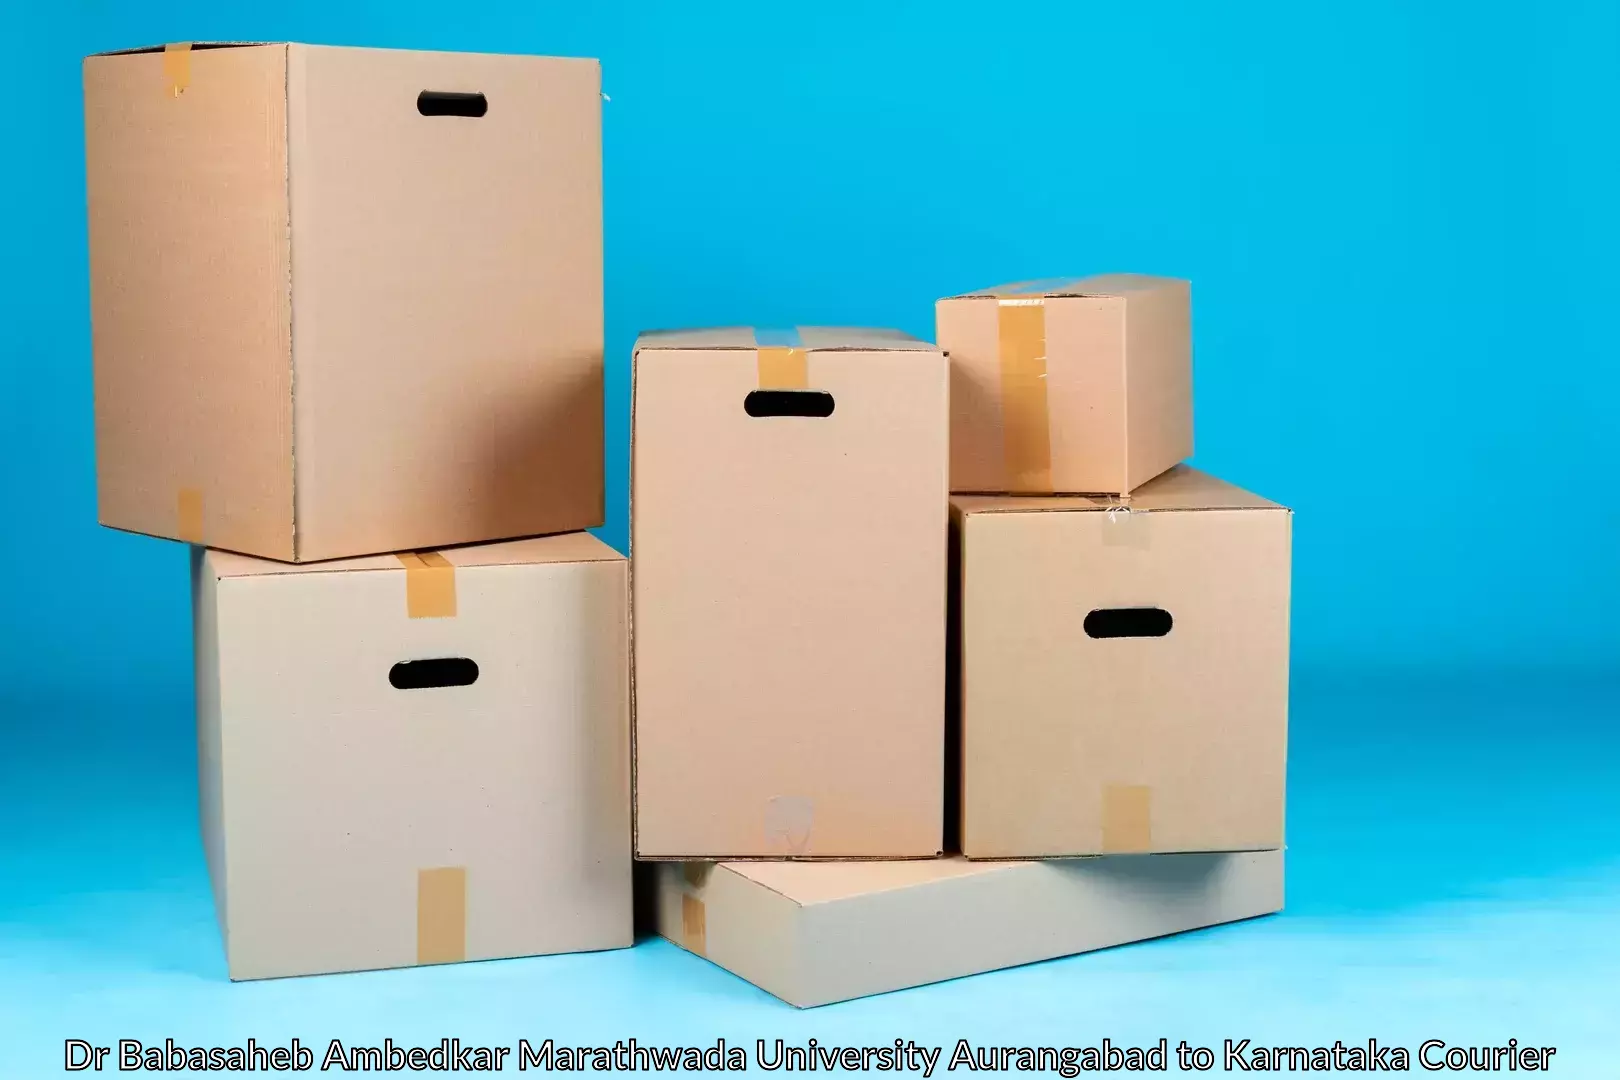 Efficient household movers Dr Babasaheb Ambedkar Marathwada University Aurangabad to Hoovina Hadagali